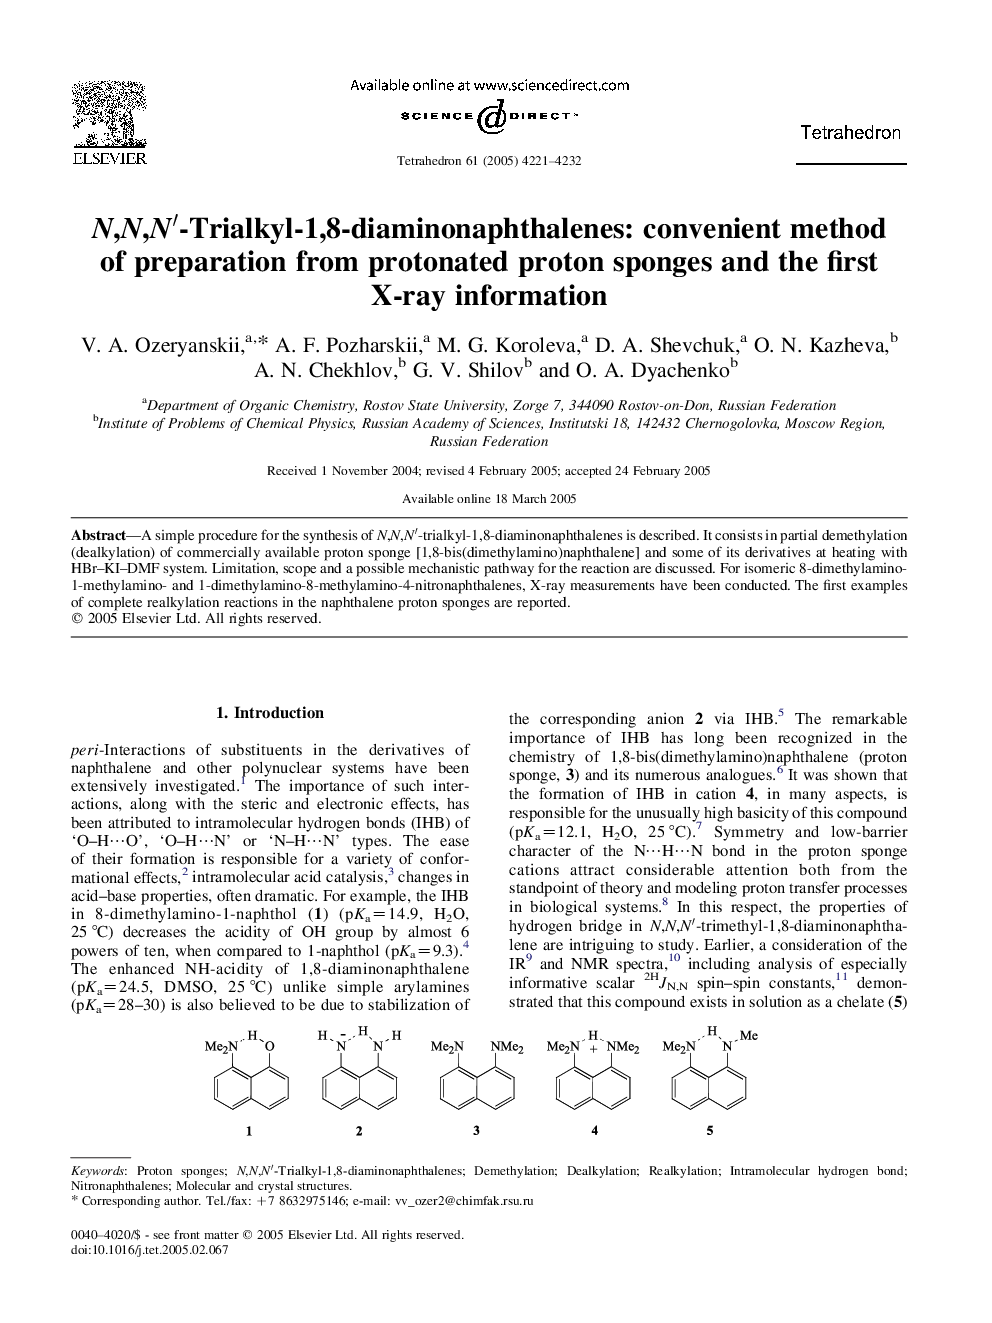 N,N,Nâ²-Trialkyl-1,8-diaminonaphthalenes: convenient method of preparation from protonated proton sponges and the first X-ray information